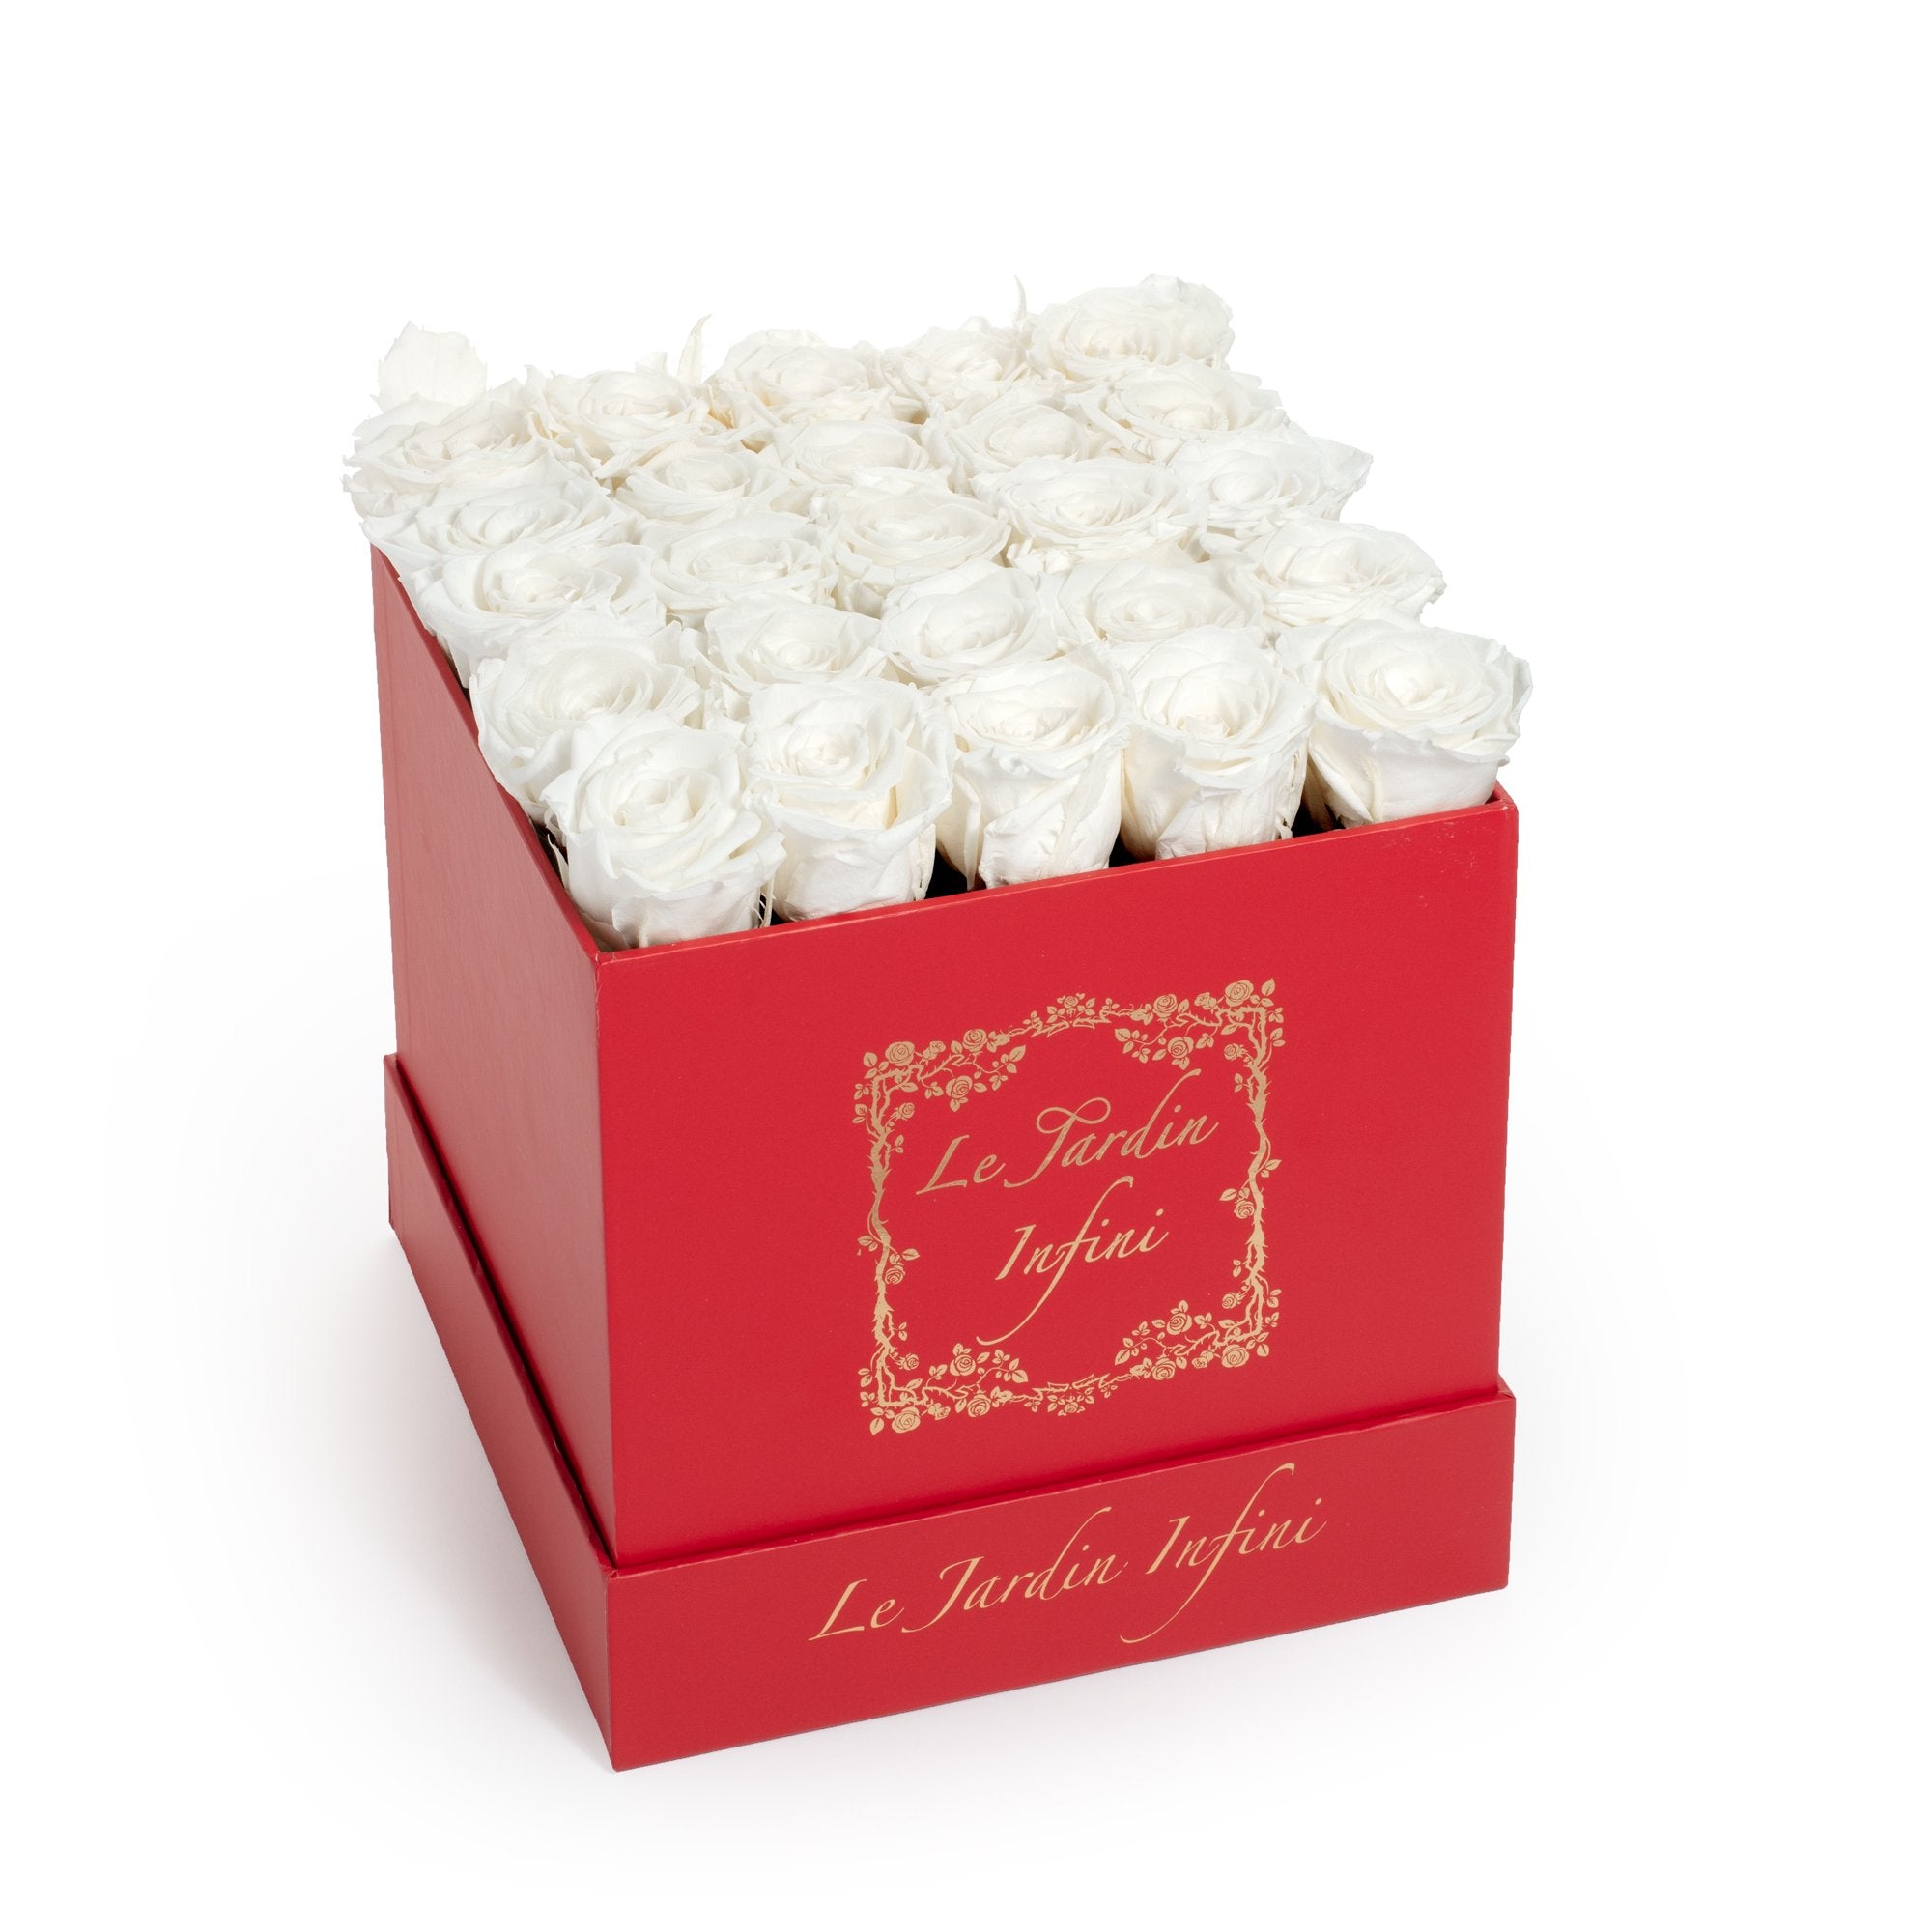 White Preserved Roses - Medium Square Red Box Castorite